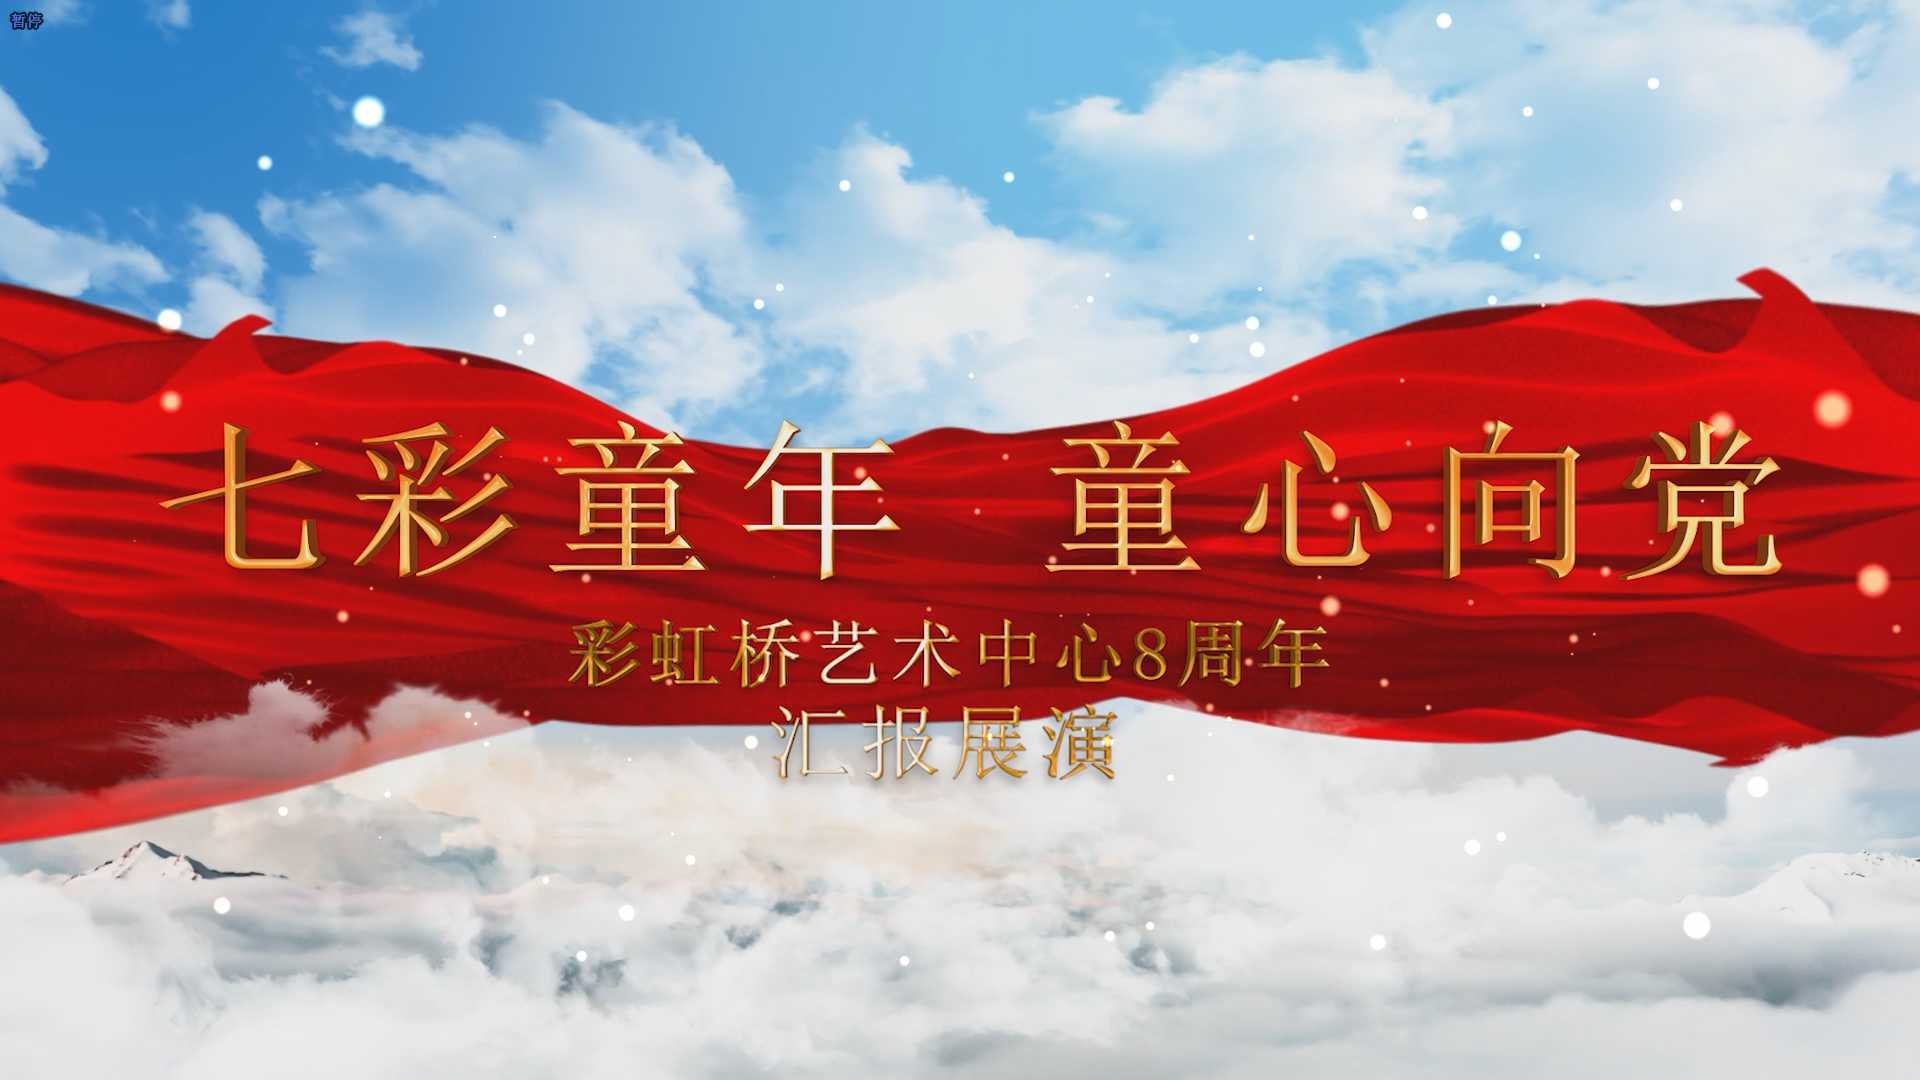 彩虹桥艺术中心8周年汇报展演